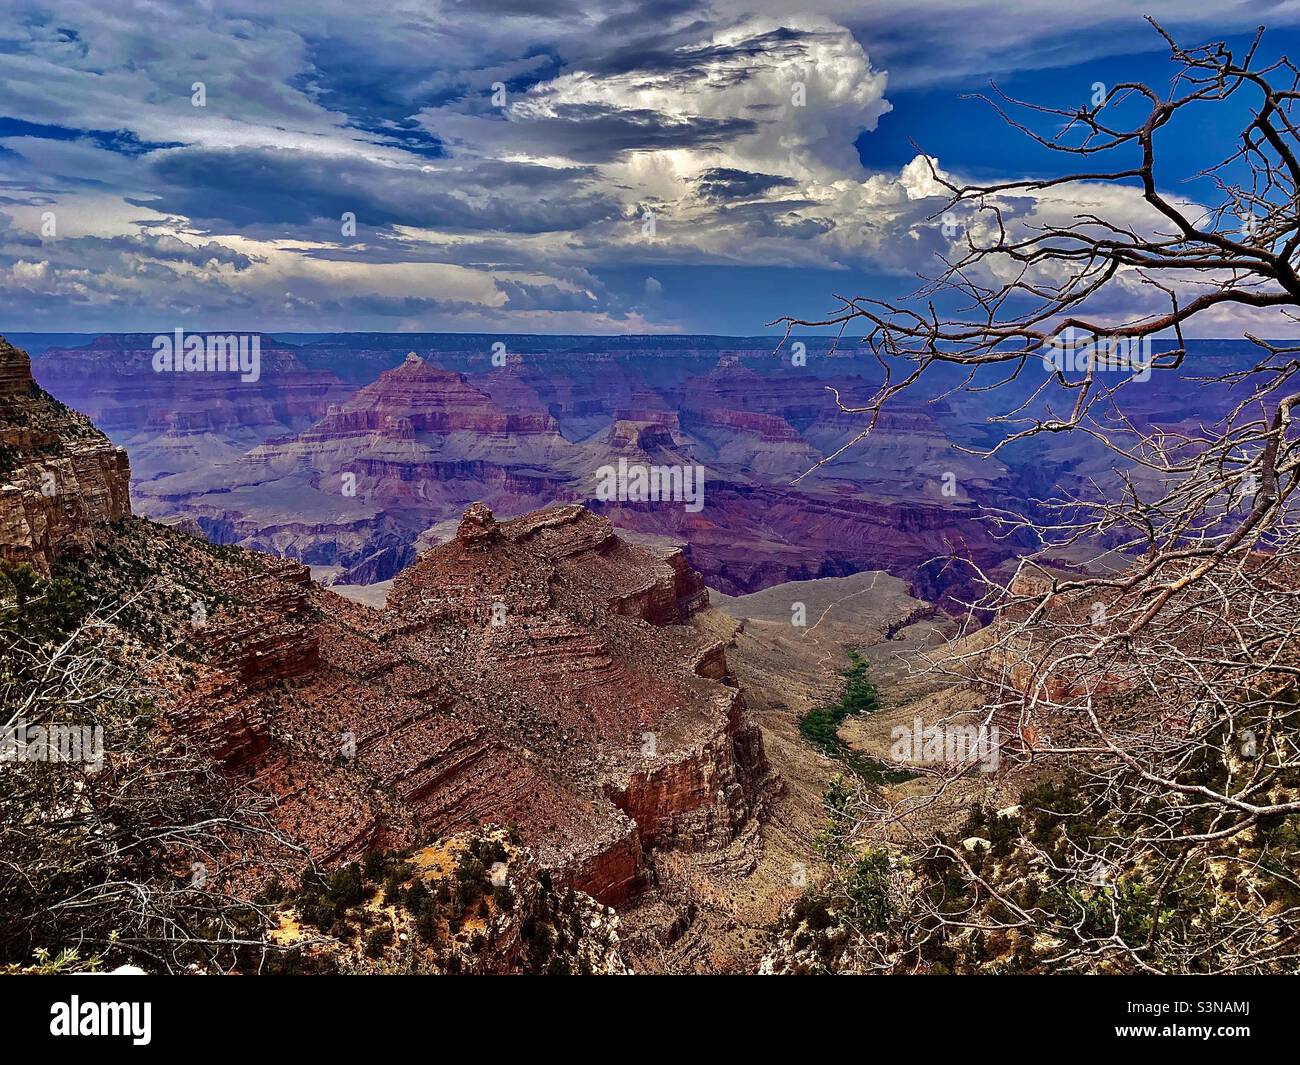 Grand Canyon, Arizona, États-Unis. L'une des 7 merveilles naturelles du monde montrant les belles couleurs du canyon, la flore naturelle, les arbres et la vie végétale sous un ciel bleu avec des nuages blancs et le soleil Banque D'Images